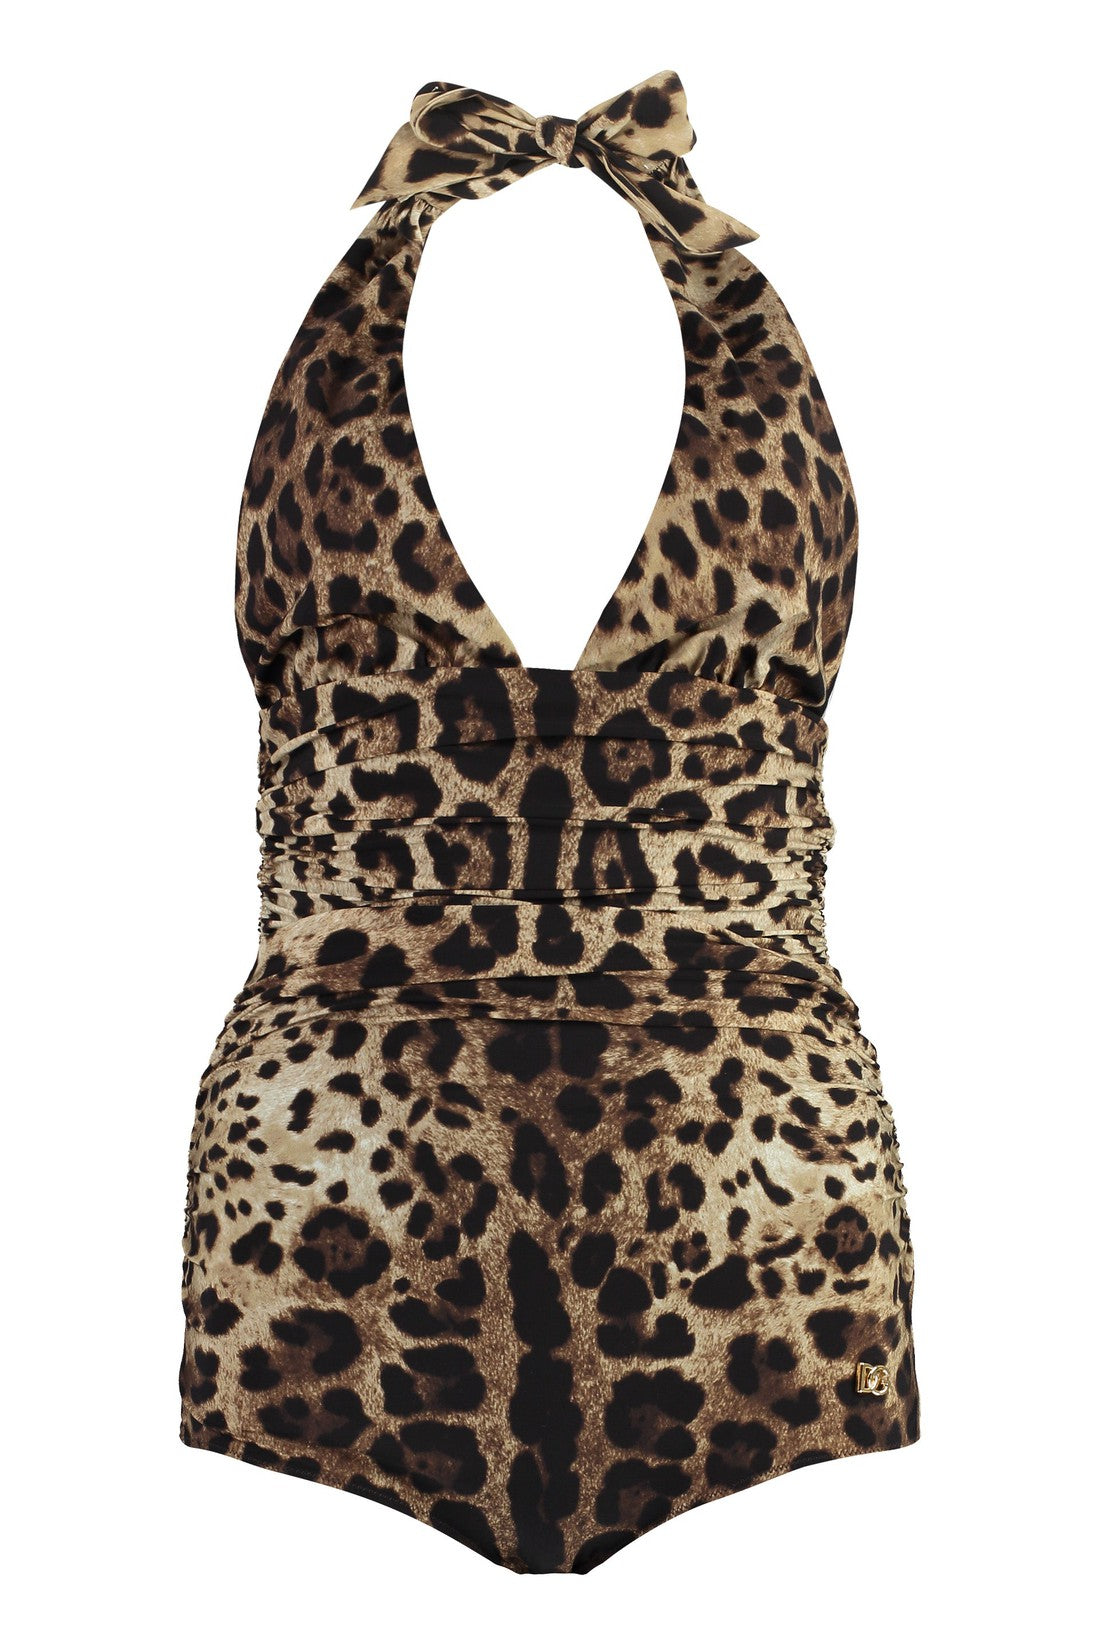 Dolce & Gabbana-OUTLET-SALE-Leopard print one-piece swimsuit-ARCHIVIST